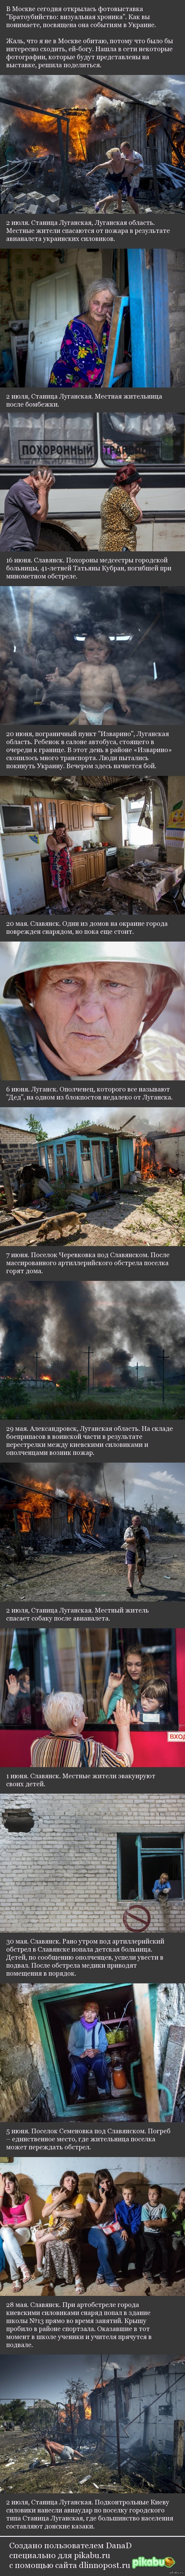 Фотовыставка &quot;Братоубийство: визуальная хроника&quot; фотография, Украина, война на Украине, жесть, длиннопост